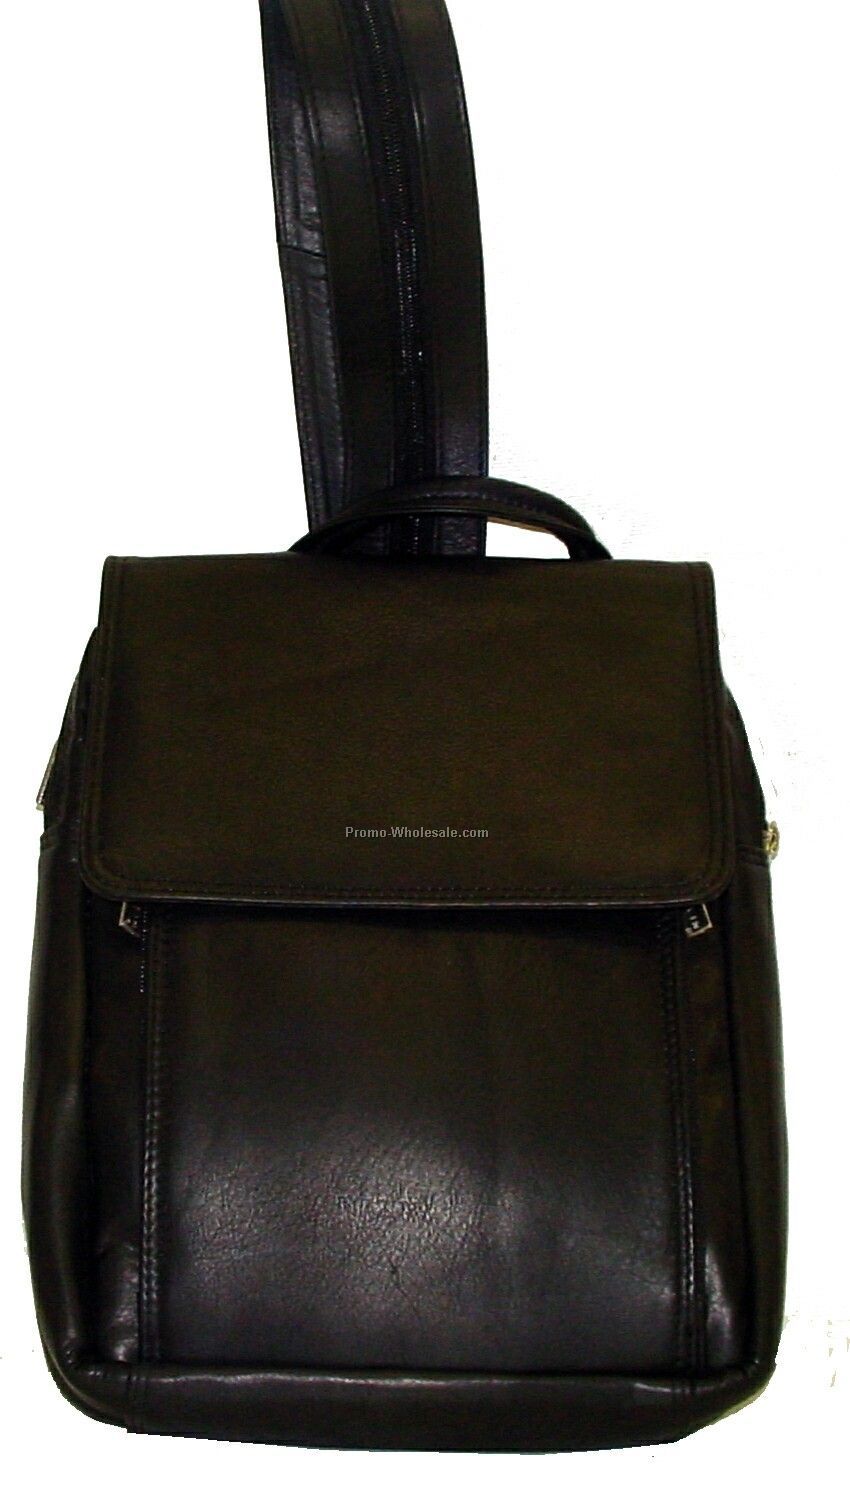 30cmx37cmx16cm Black Cowhide Annie's Day Pack Knapsack Backpack